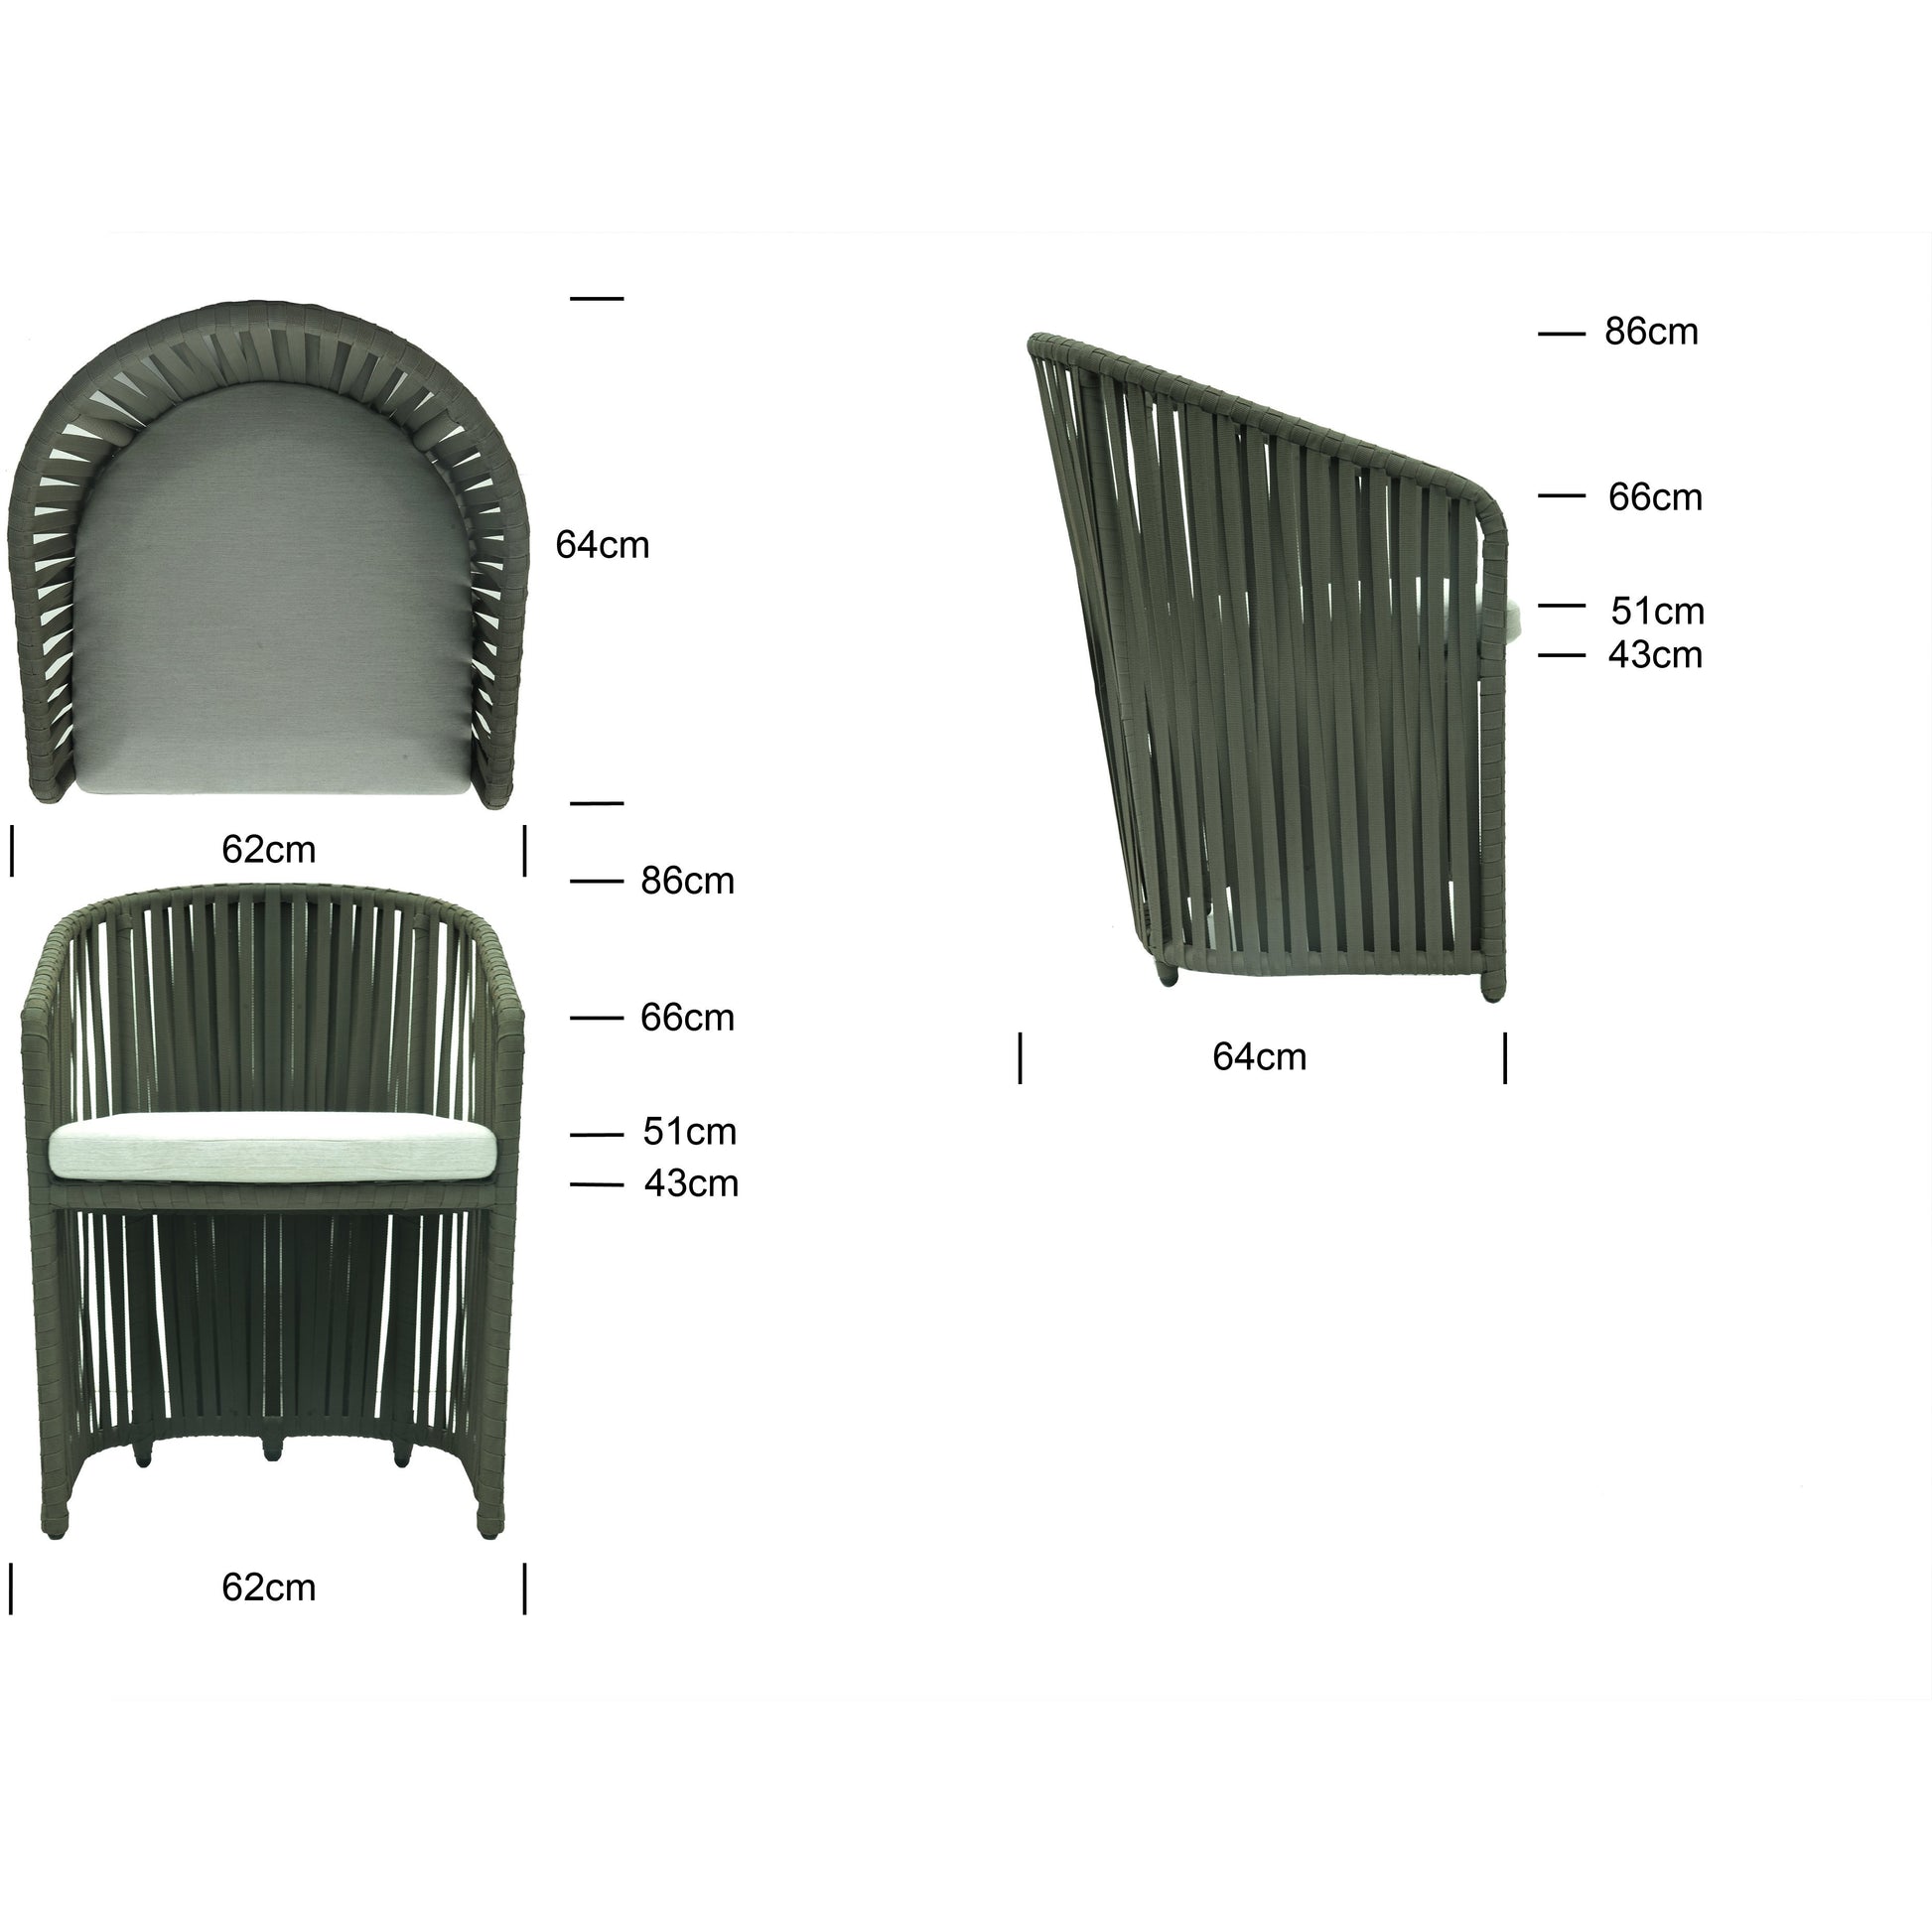 Milano Dining Chair - PadioLiving - Milano Dining Chair - Outdoor Dining Chair - PadioLiving